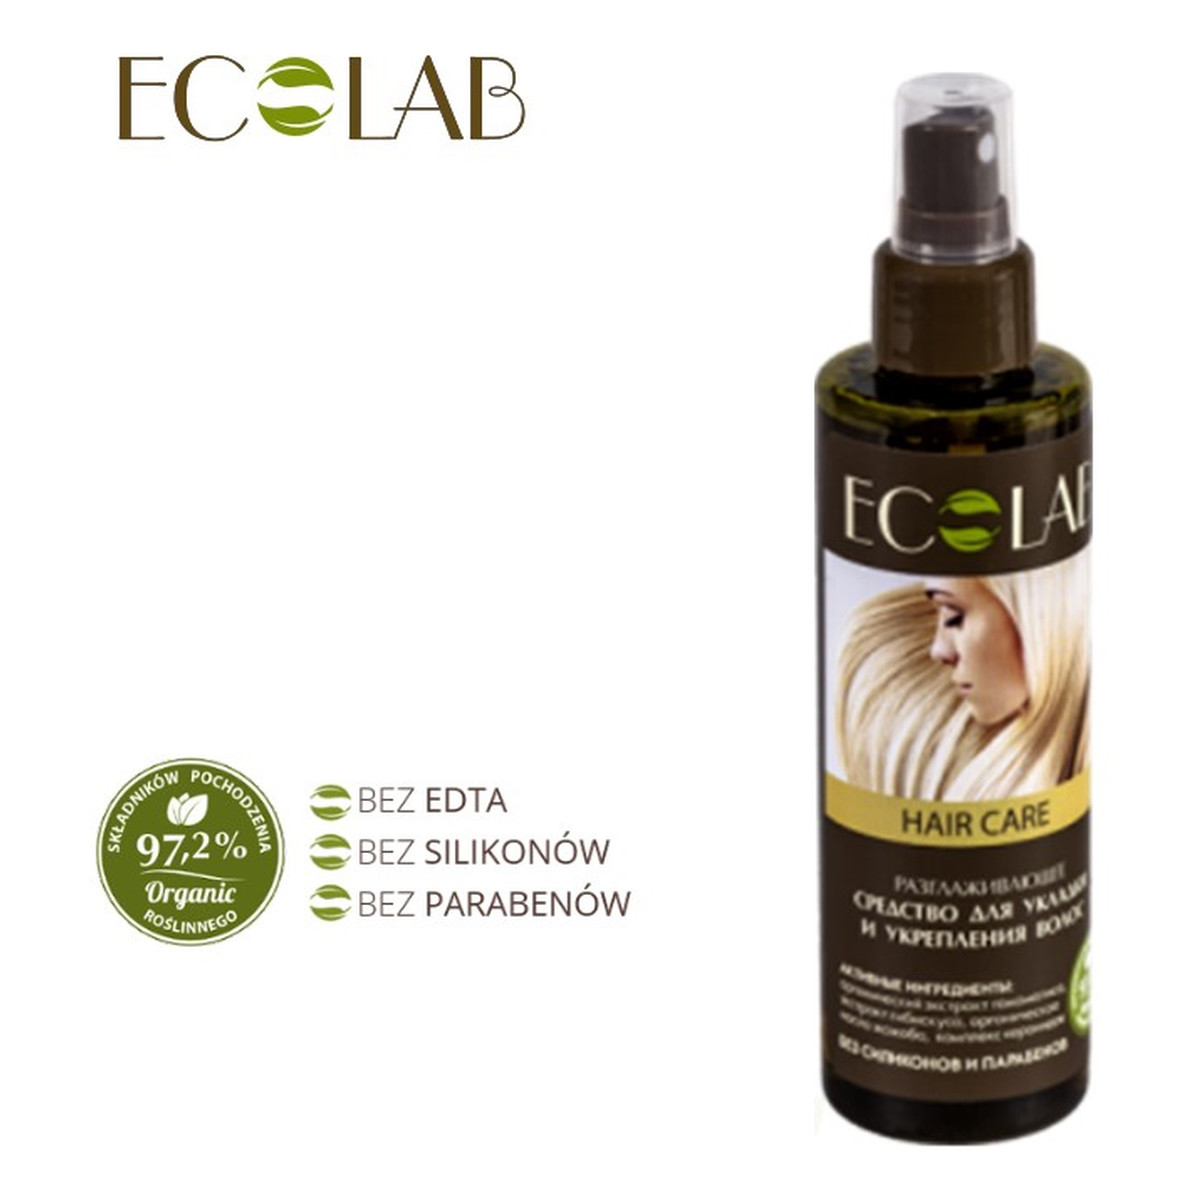 Ecolab Ec Laboratorie Spray Wygładzający do Układania i Wzmocnienia Włosów 200ml